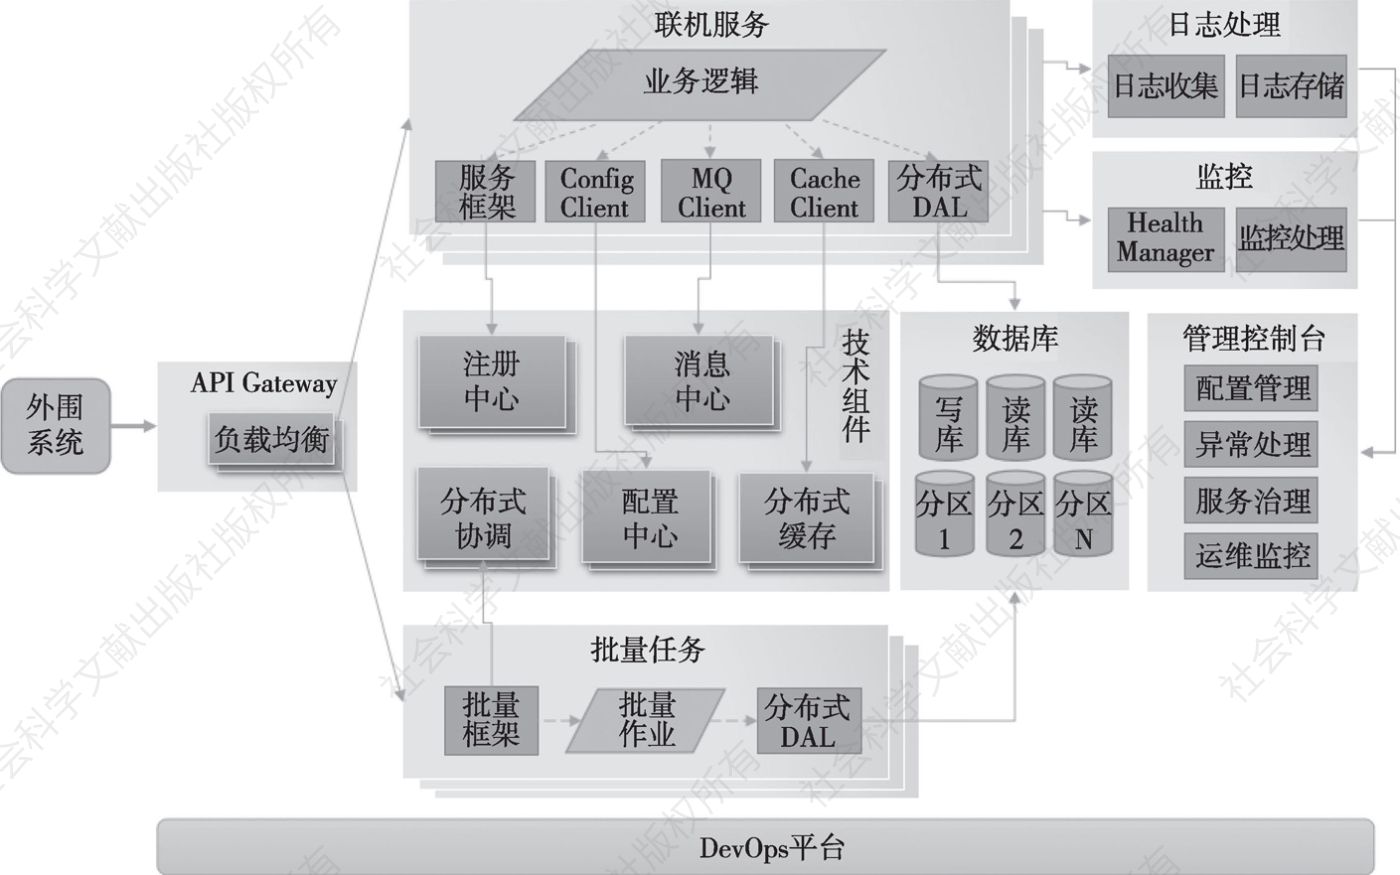 图4-9 分布式技术平台架构